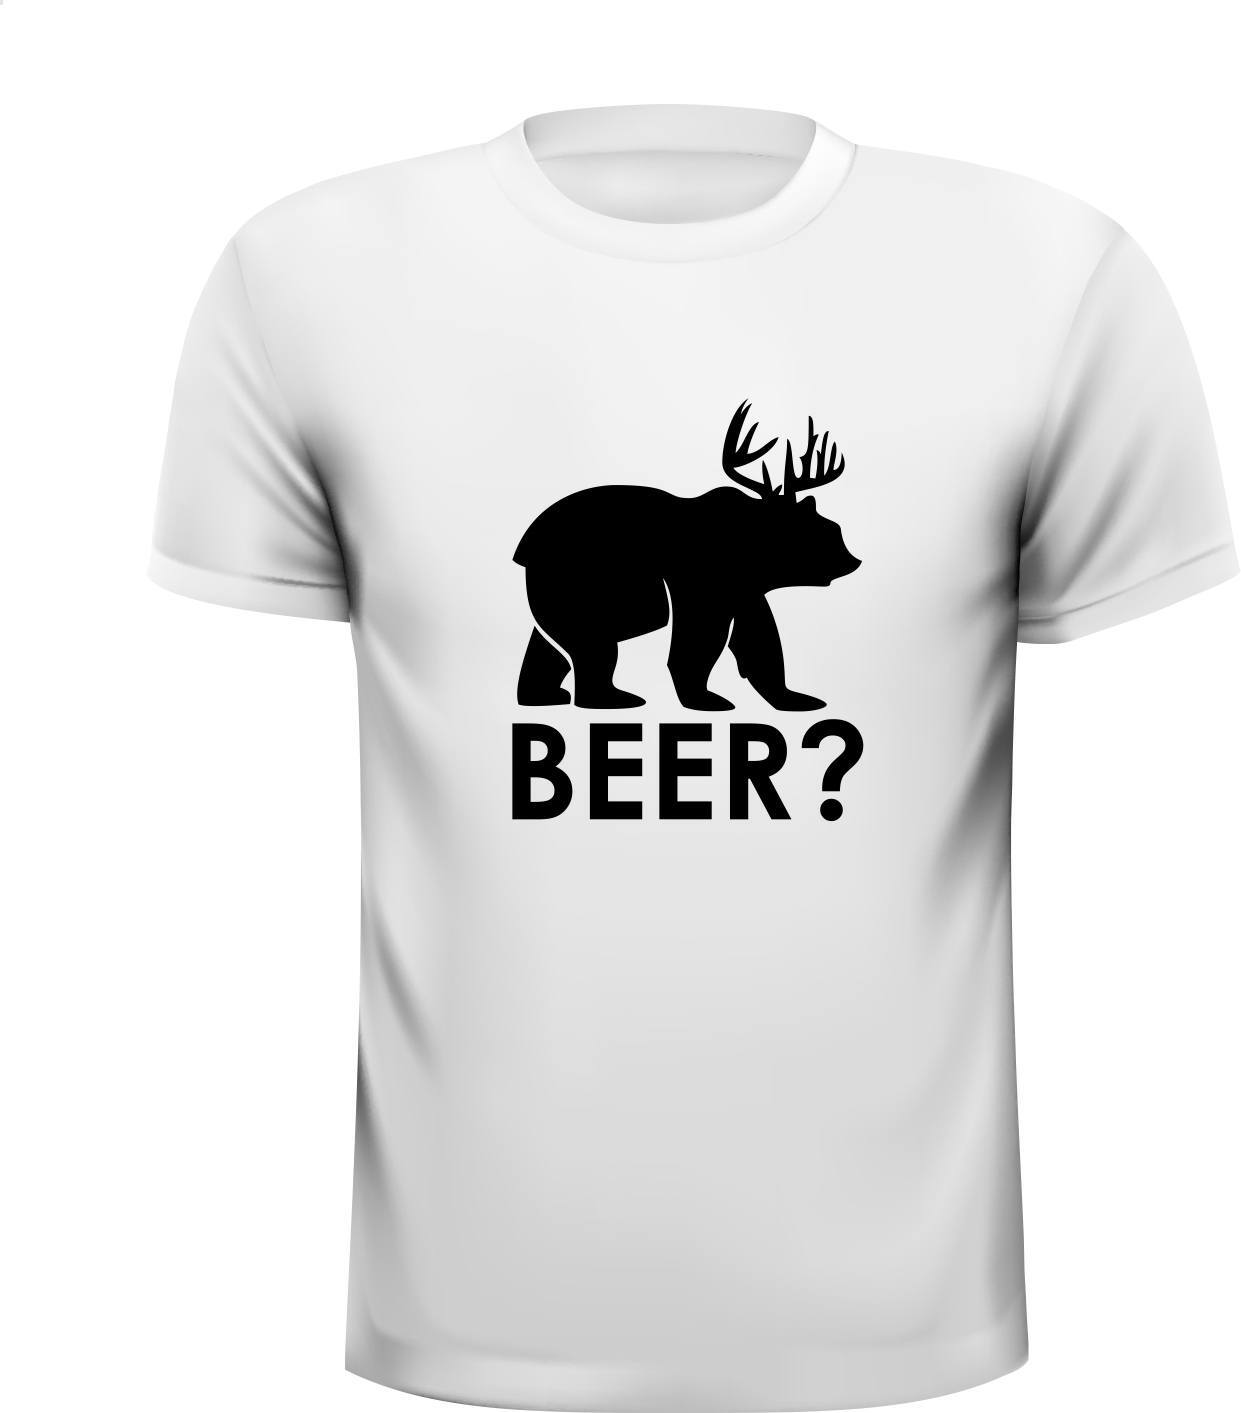 Beer bier t-shirt grappig leuk drank shirt